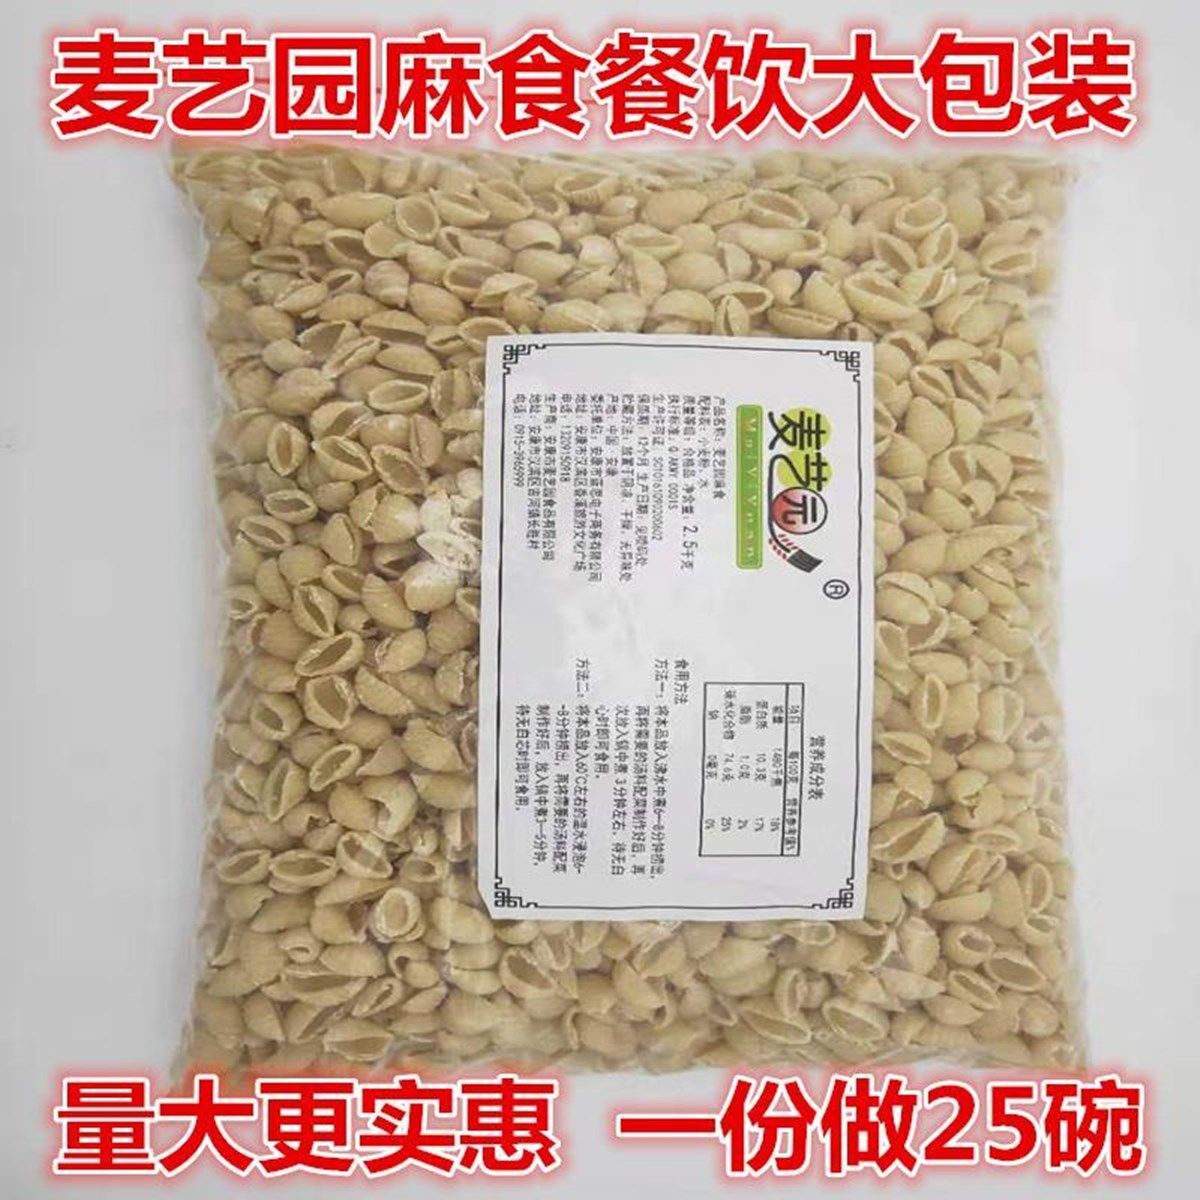 麦艺园麻什面食陕西特产烩麻食